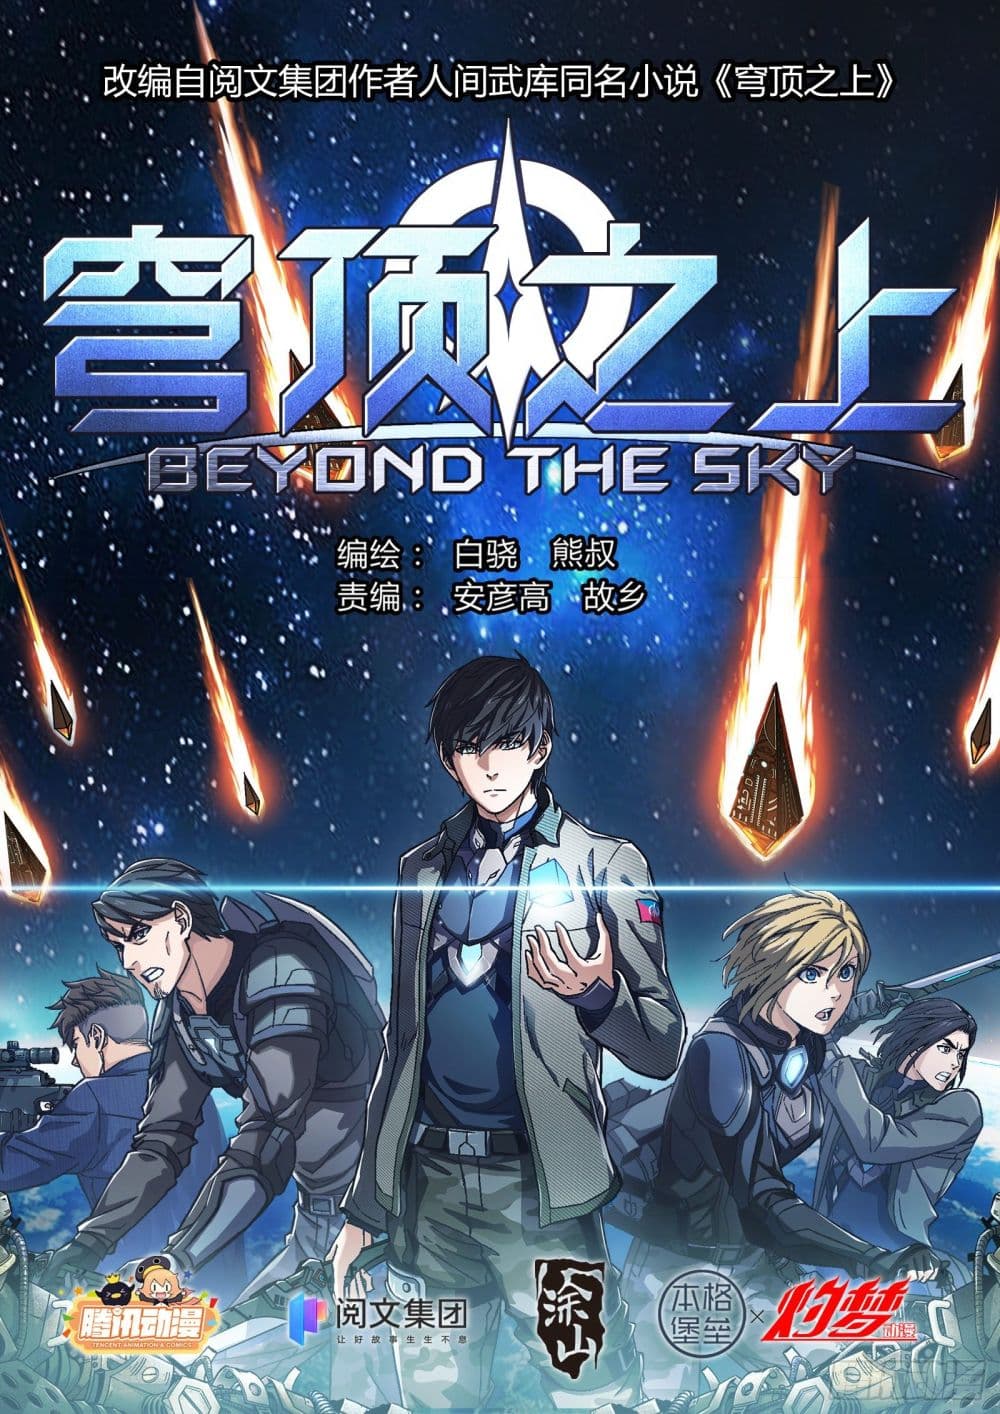 Beyond The Sky 13 (1)